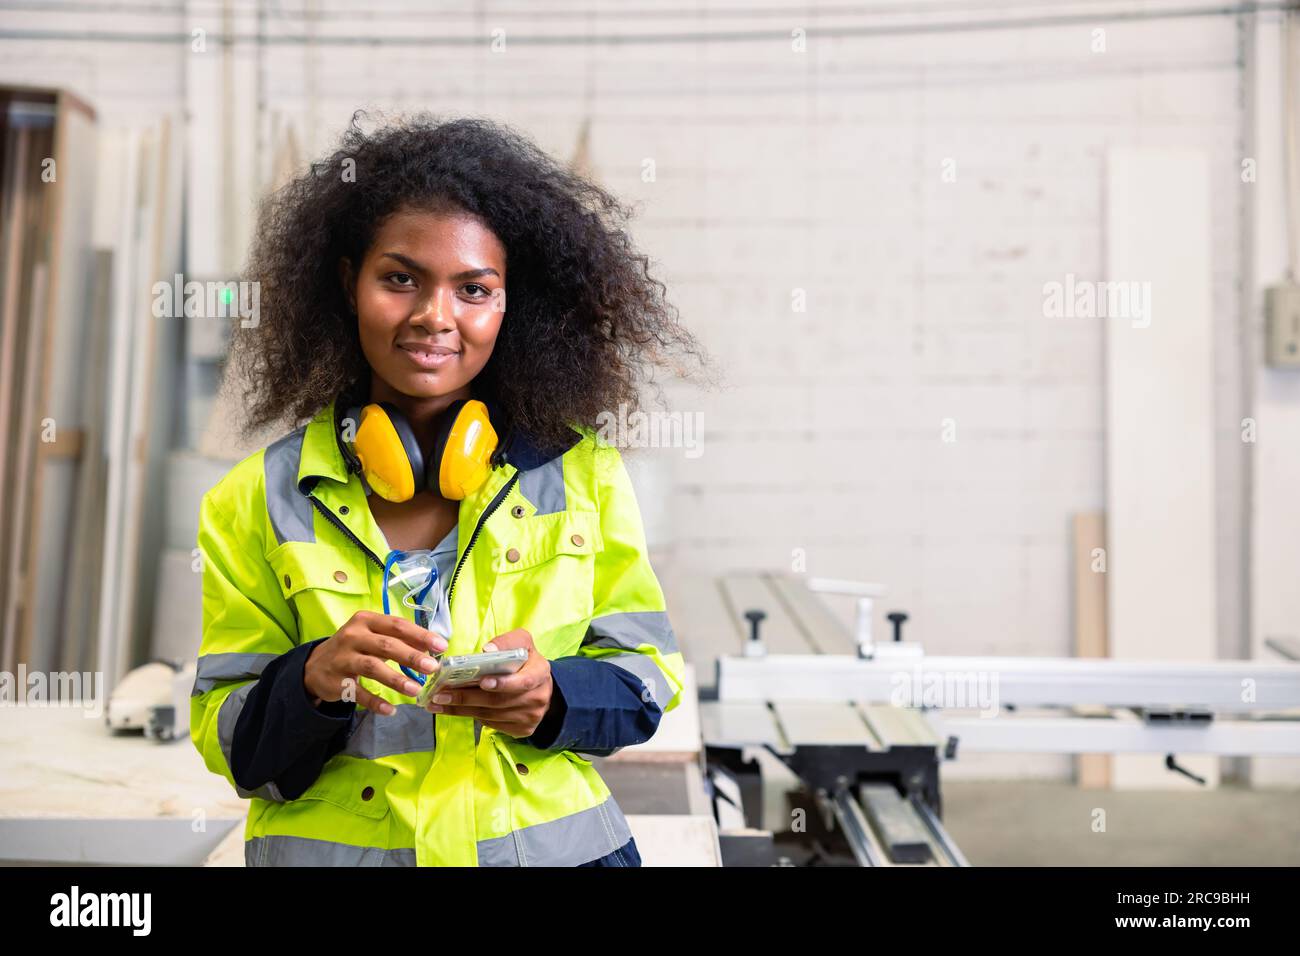 Porträt schwarze afrikanische Frau schlaue junge Ingenieurin mit Schutzausrüstung glücklich lächelnd mit Smartphone in der Holzmöbelfabrik Stockfoto